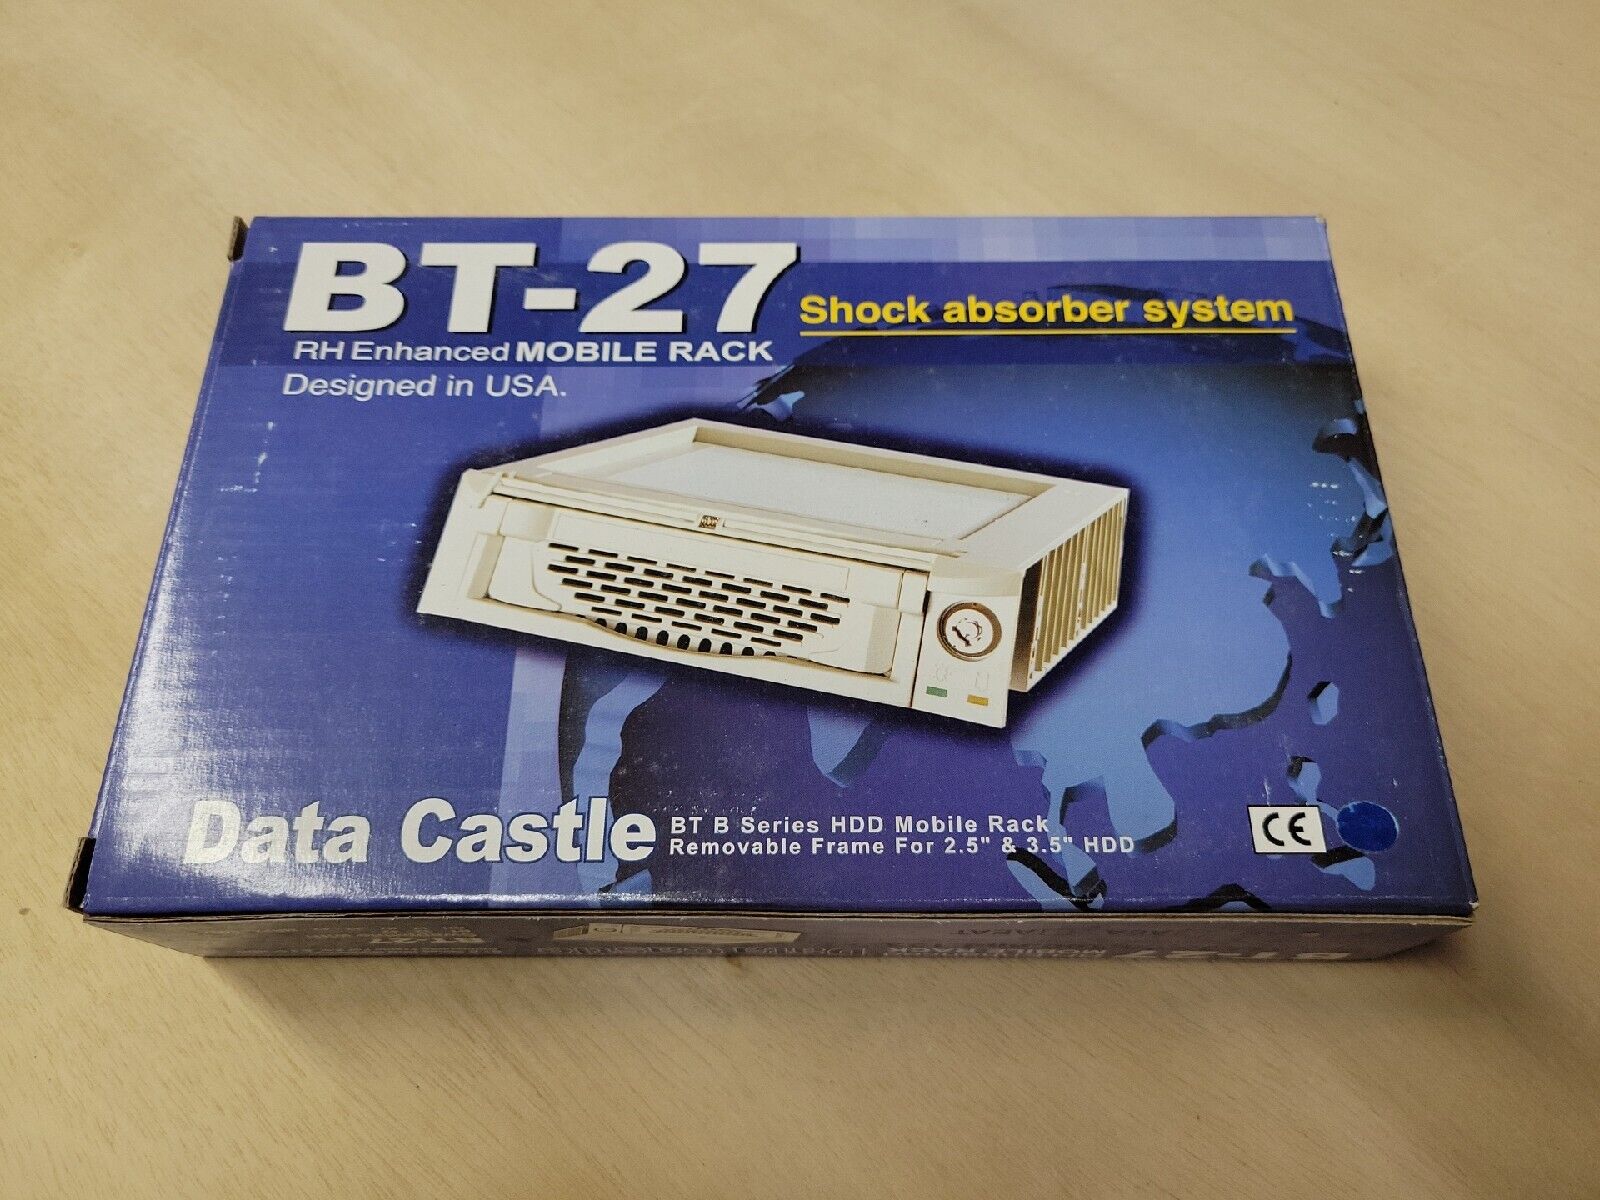 Data Castle BT-27 Mobile Rack Data Castle BT-27